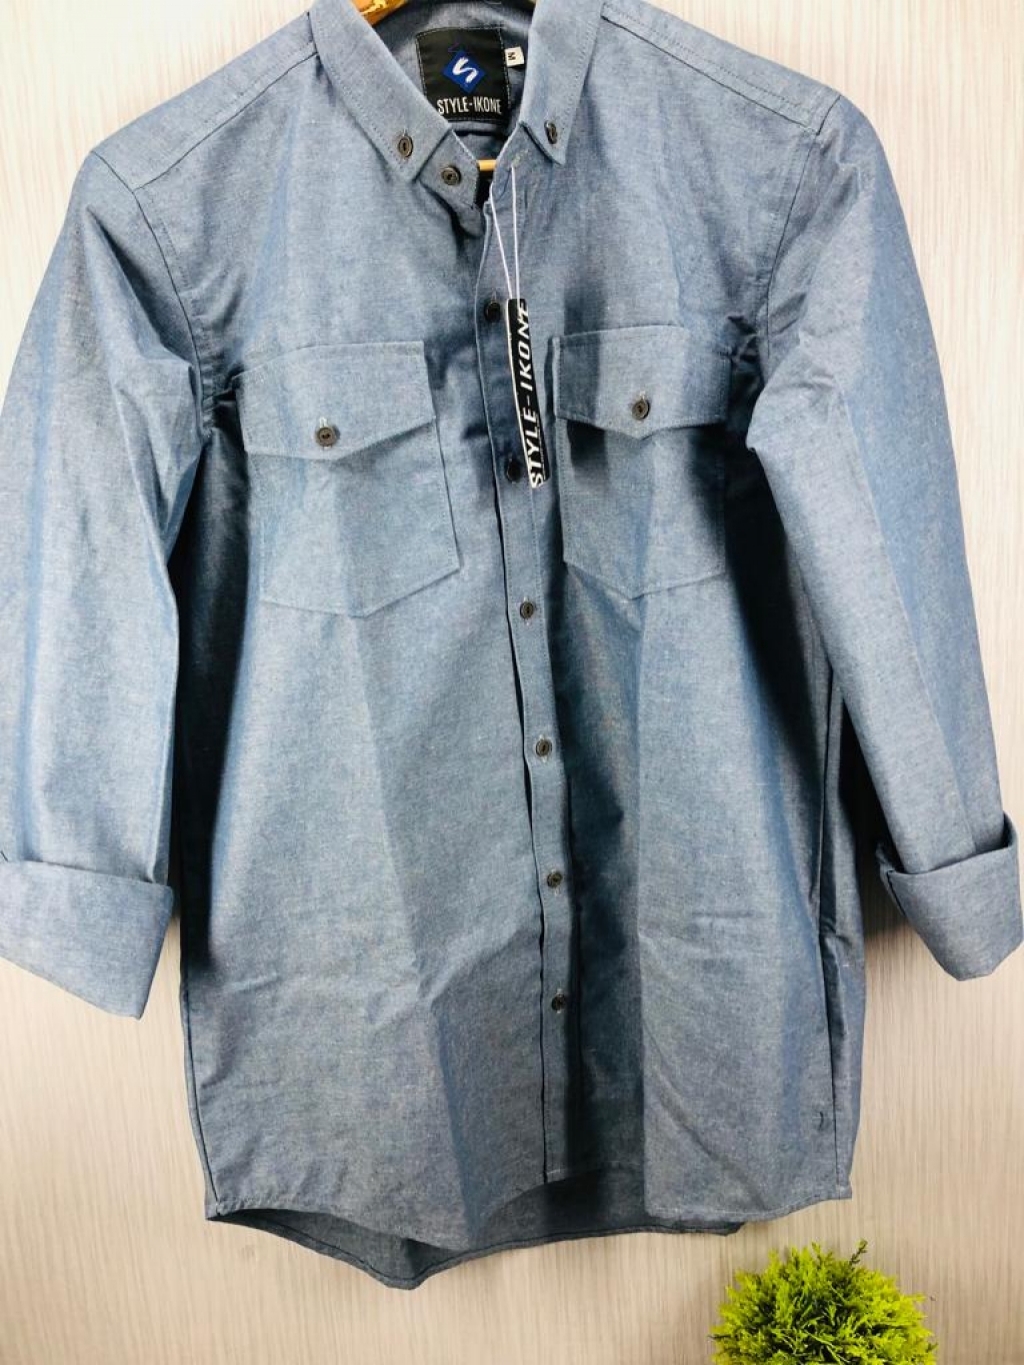 Buy Men's Cotton Denim Blue Plain Dress Shirt in Pakistan | online ...